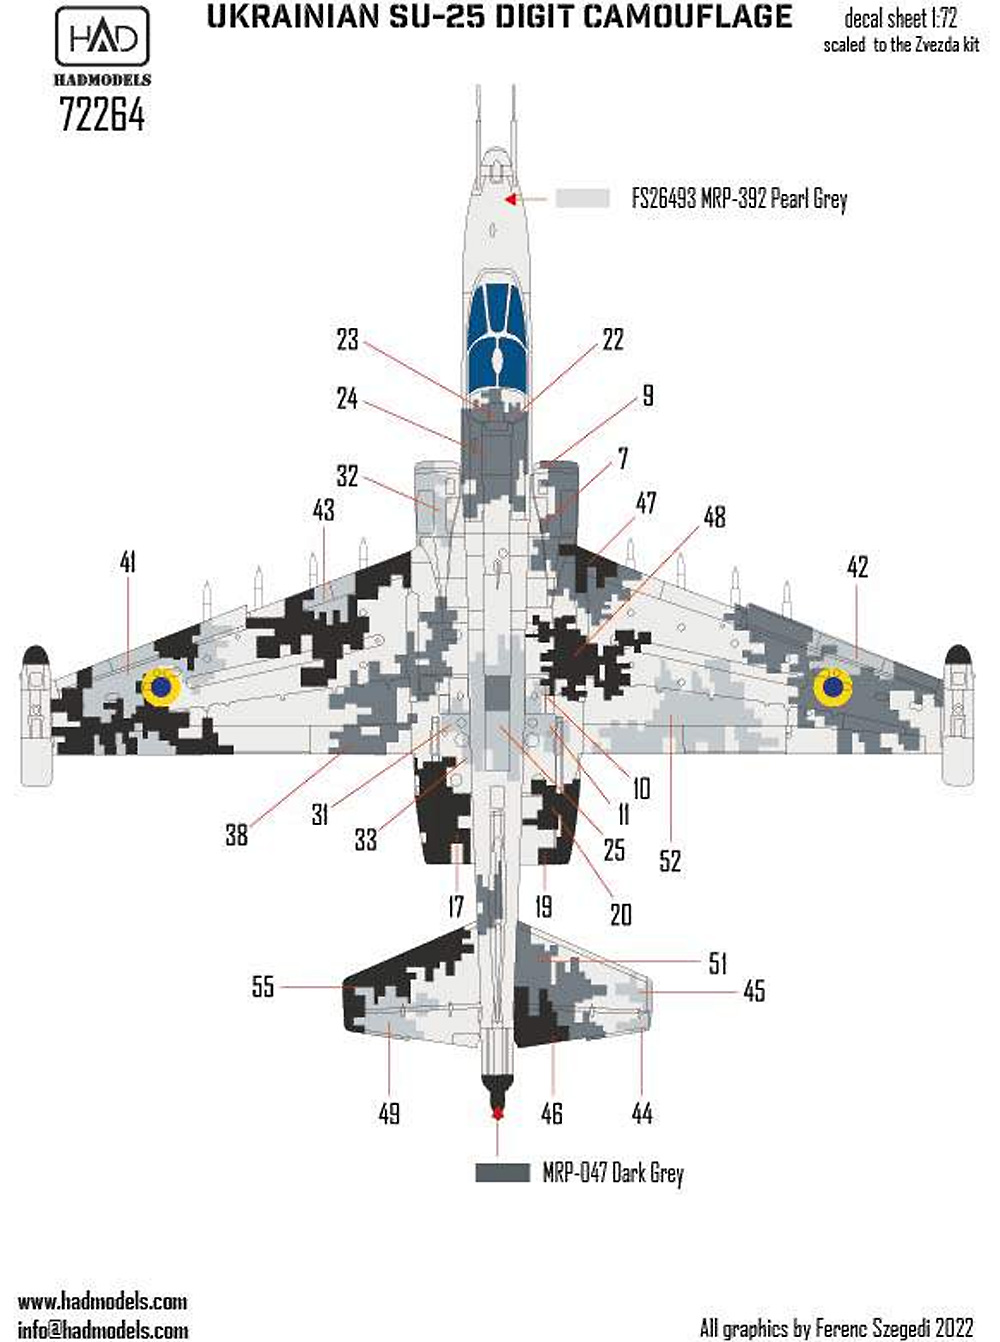 Su-25 フロッグフット ウクライナ デジタル迷彩 1 デカール (ズべズダ用) デカール (HAD MODELS 1/72 デカール No.72264) 商品画像_2